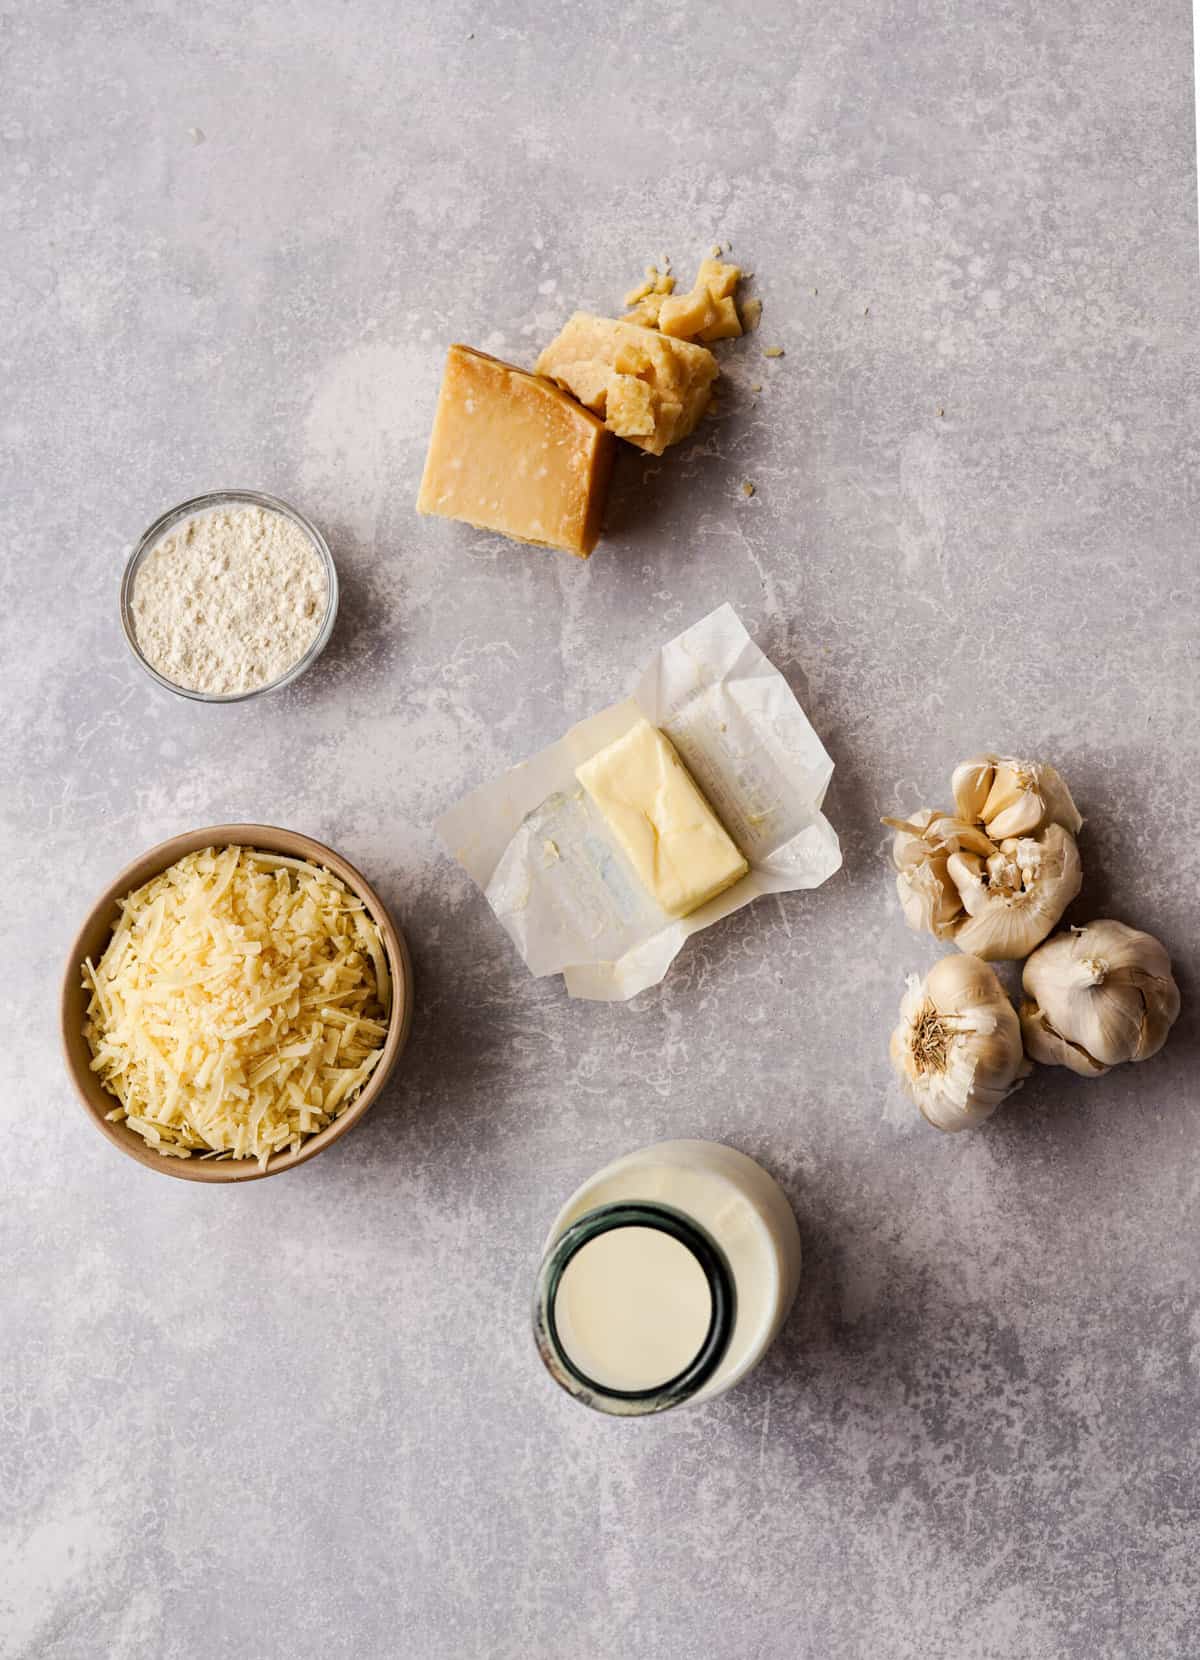 ingredients used to make garlic parmesan sauce sit on a countertop.